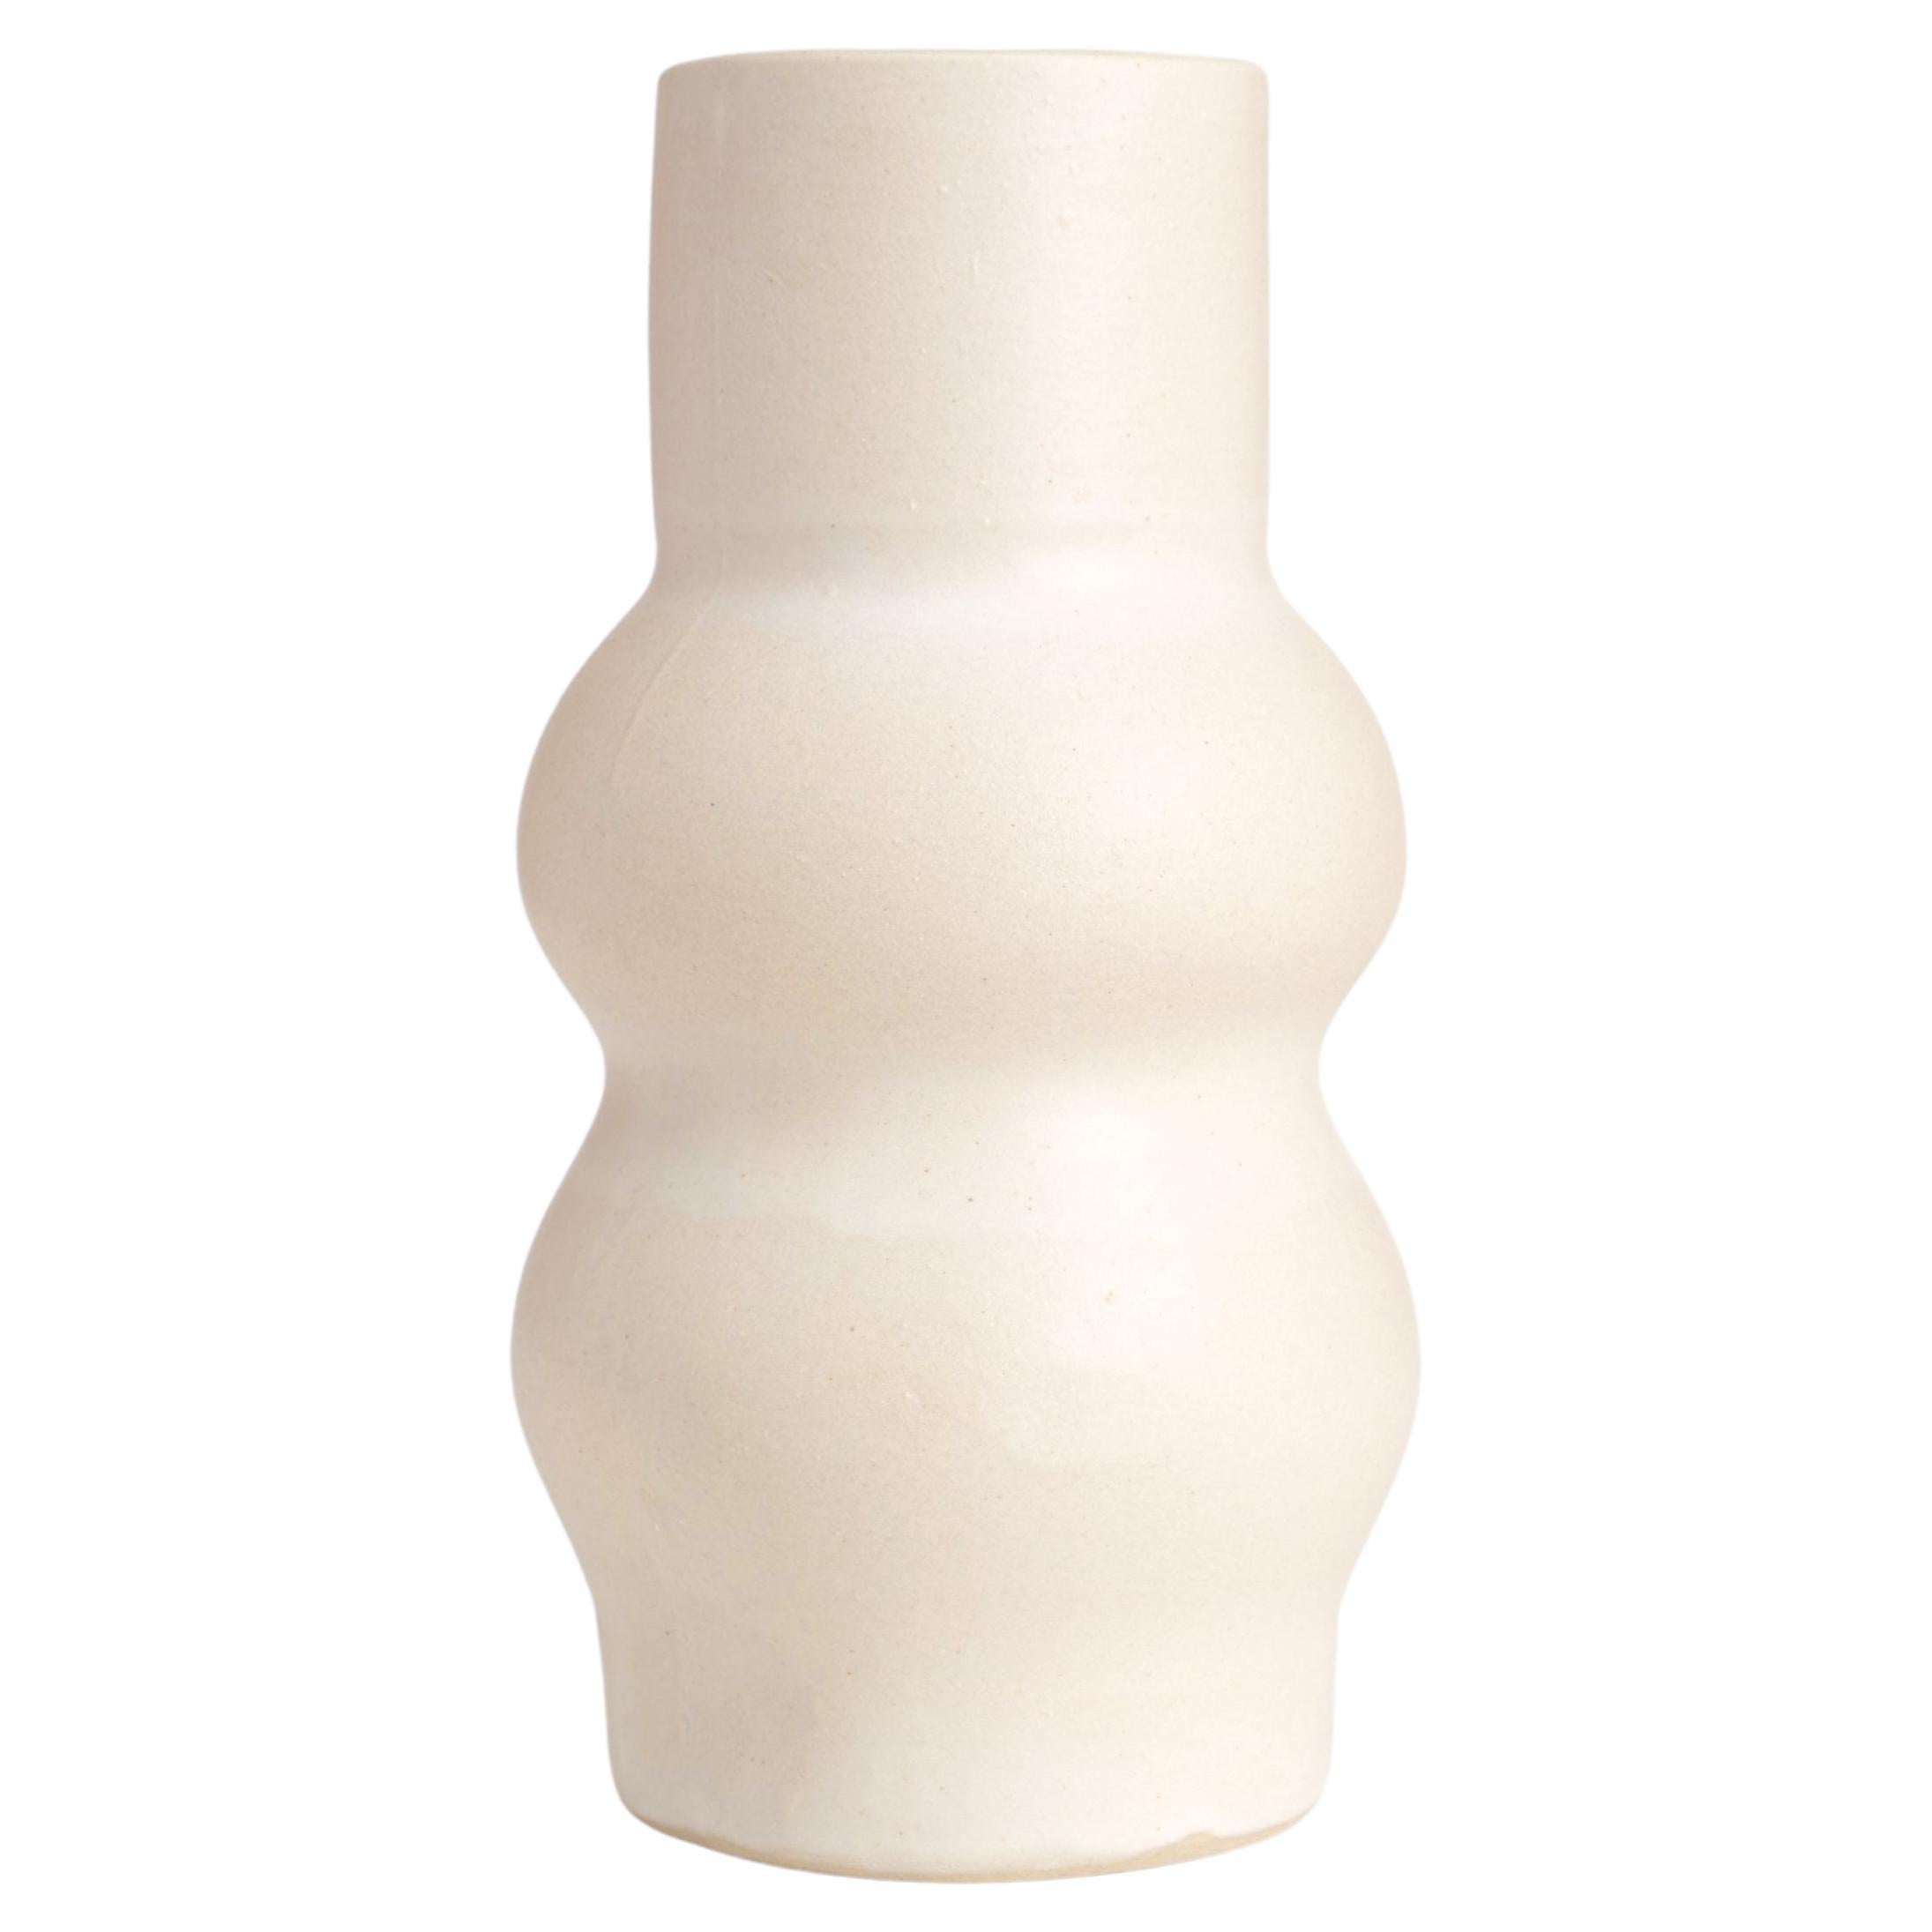 Femme II Handmade Organic Modern Clay Vase in Bone White